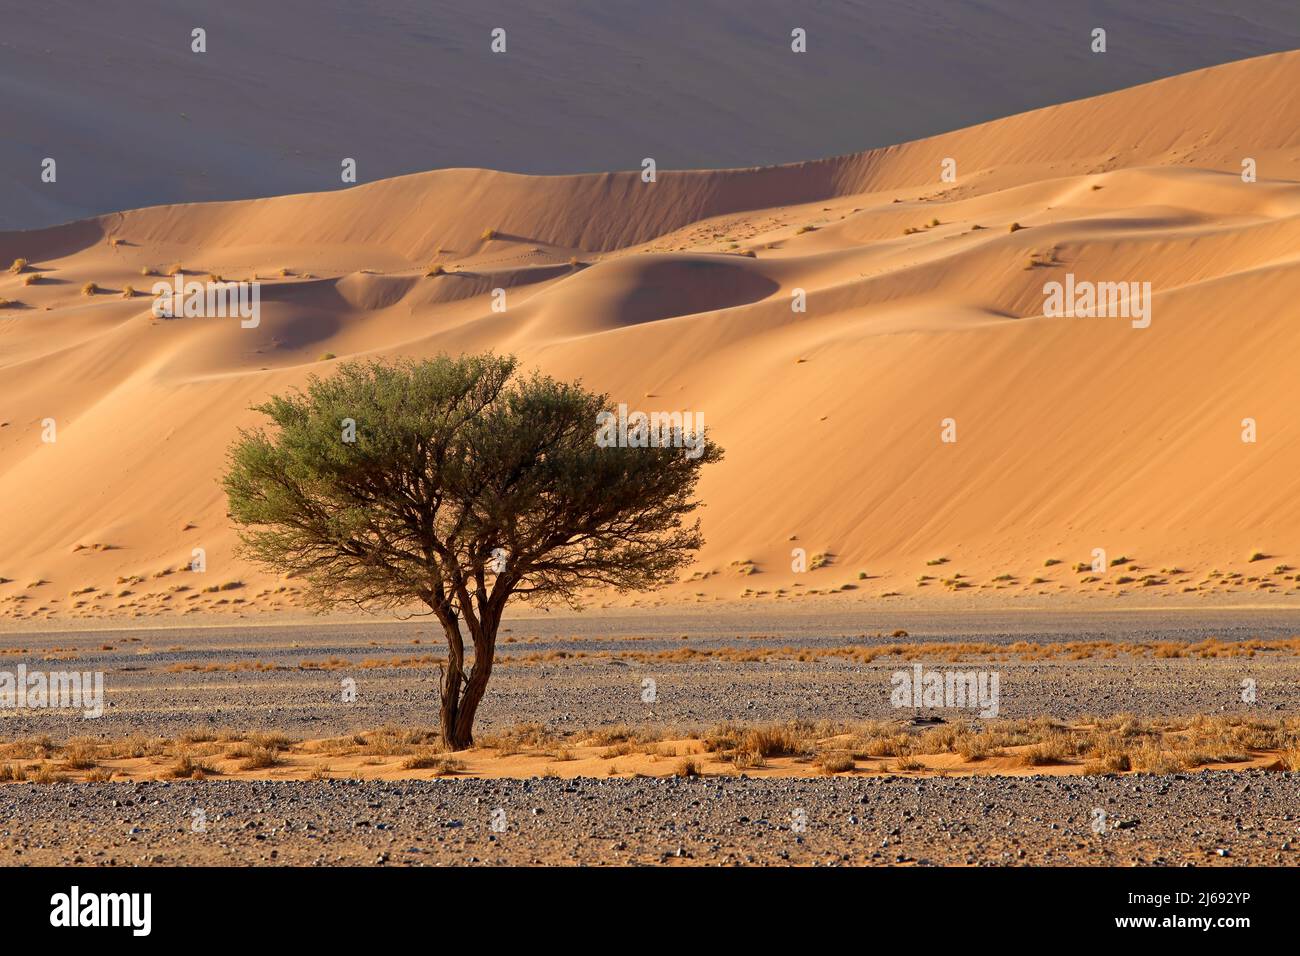 Paysage désertique avec arbre à épines, Sossusvlei, désert du Namib, Namibie Banque D'Images